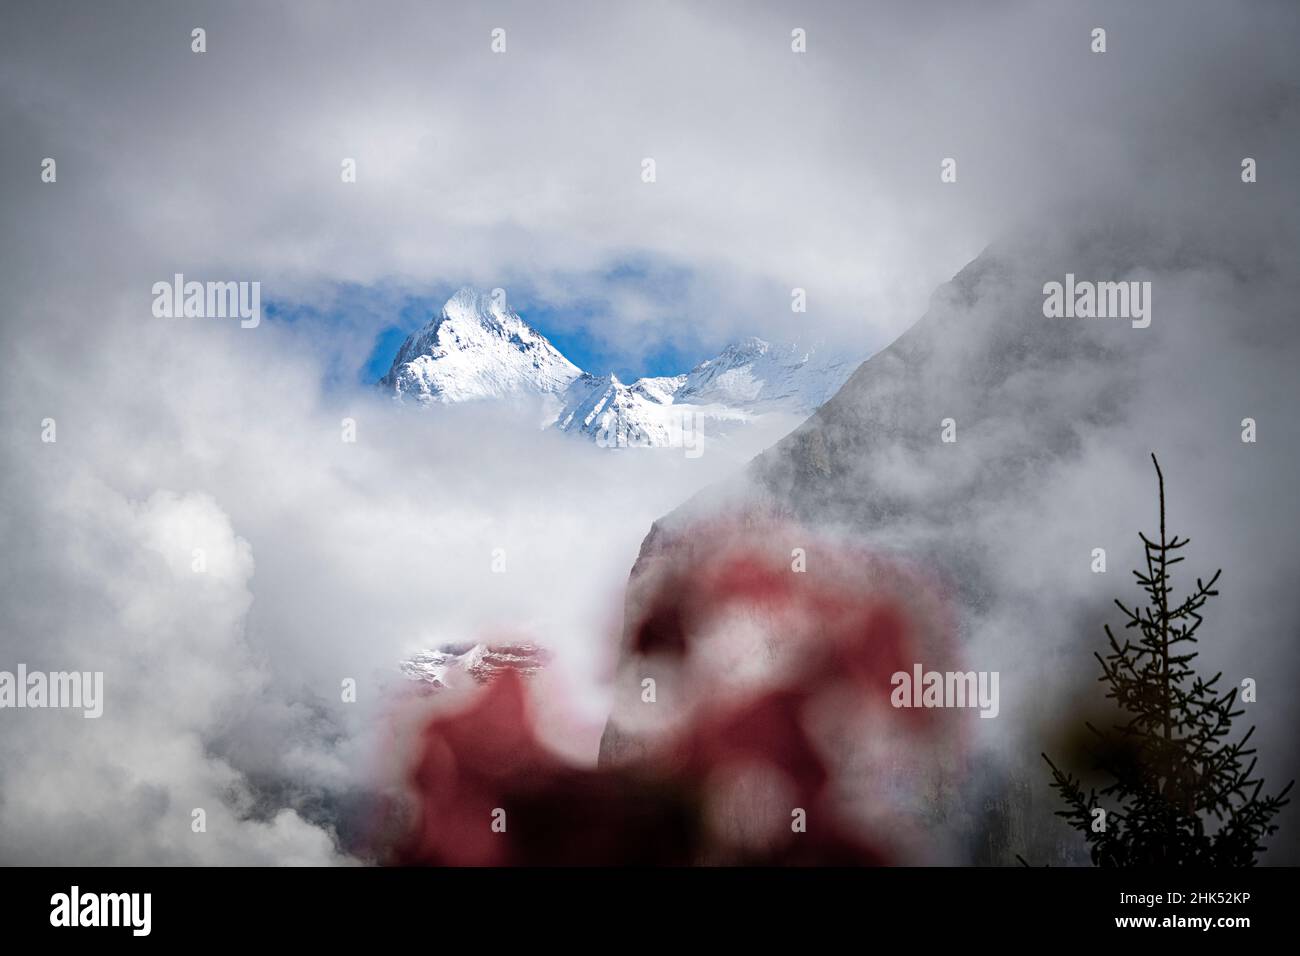 Majestätischer Eiger-Gipfel mit Schnee bedeckt im dichten Nebel, Murren, Jungfrau Region, Berner Oberland, Kanton Bern, Schweizer Alpen, Schweiz, Europa Stockfoto